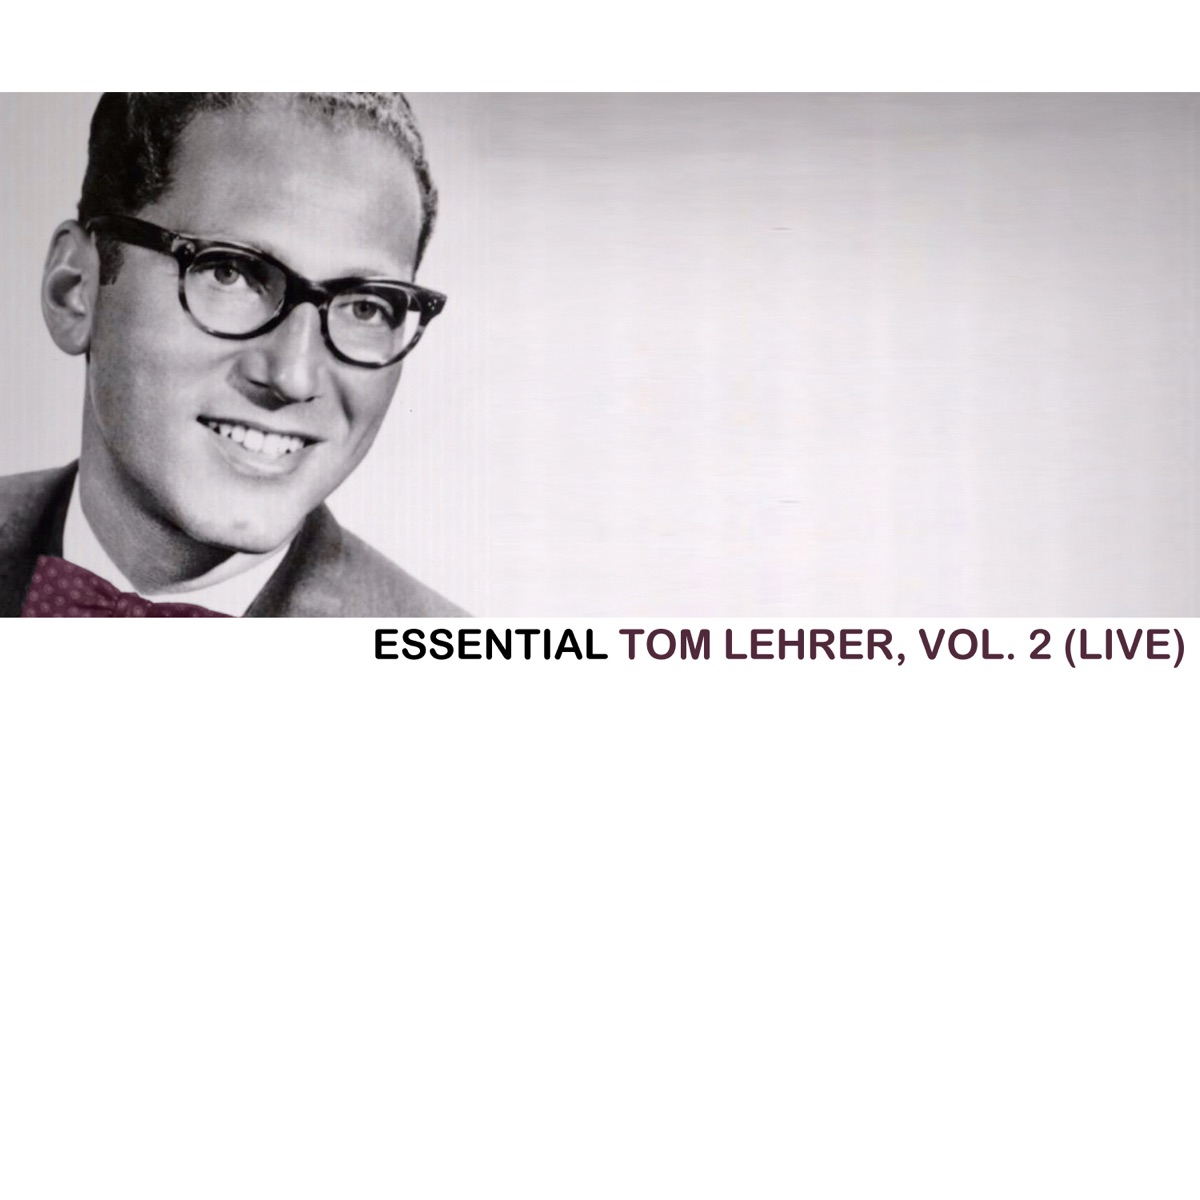 The Very Best of Tom Lehrer by Tom Lehrer on Apple Music